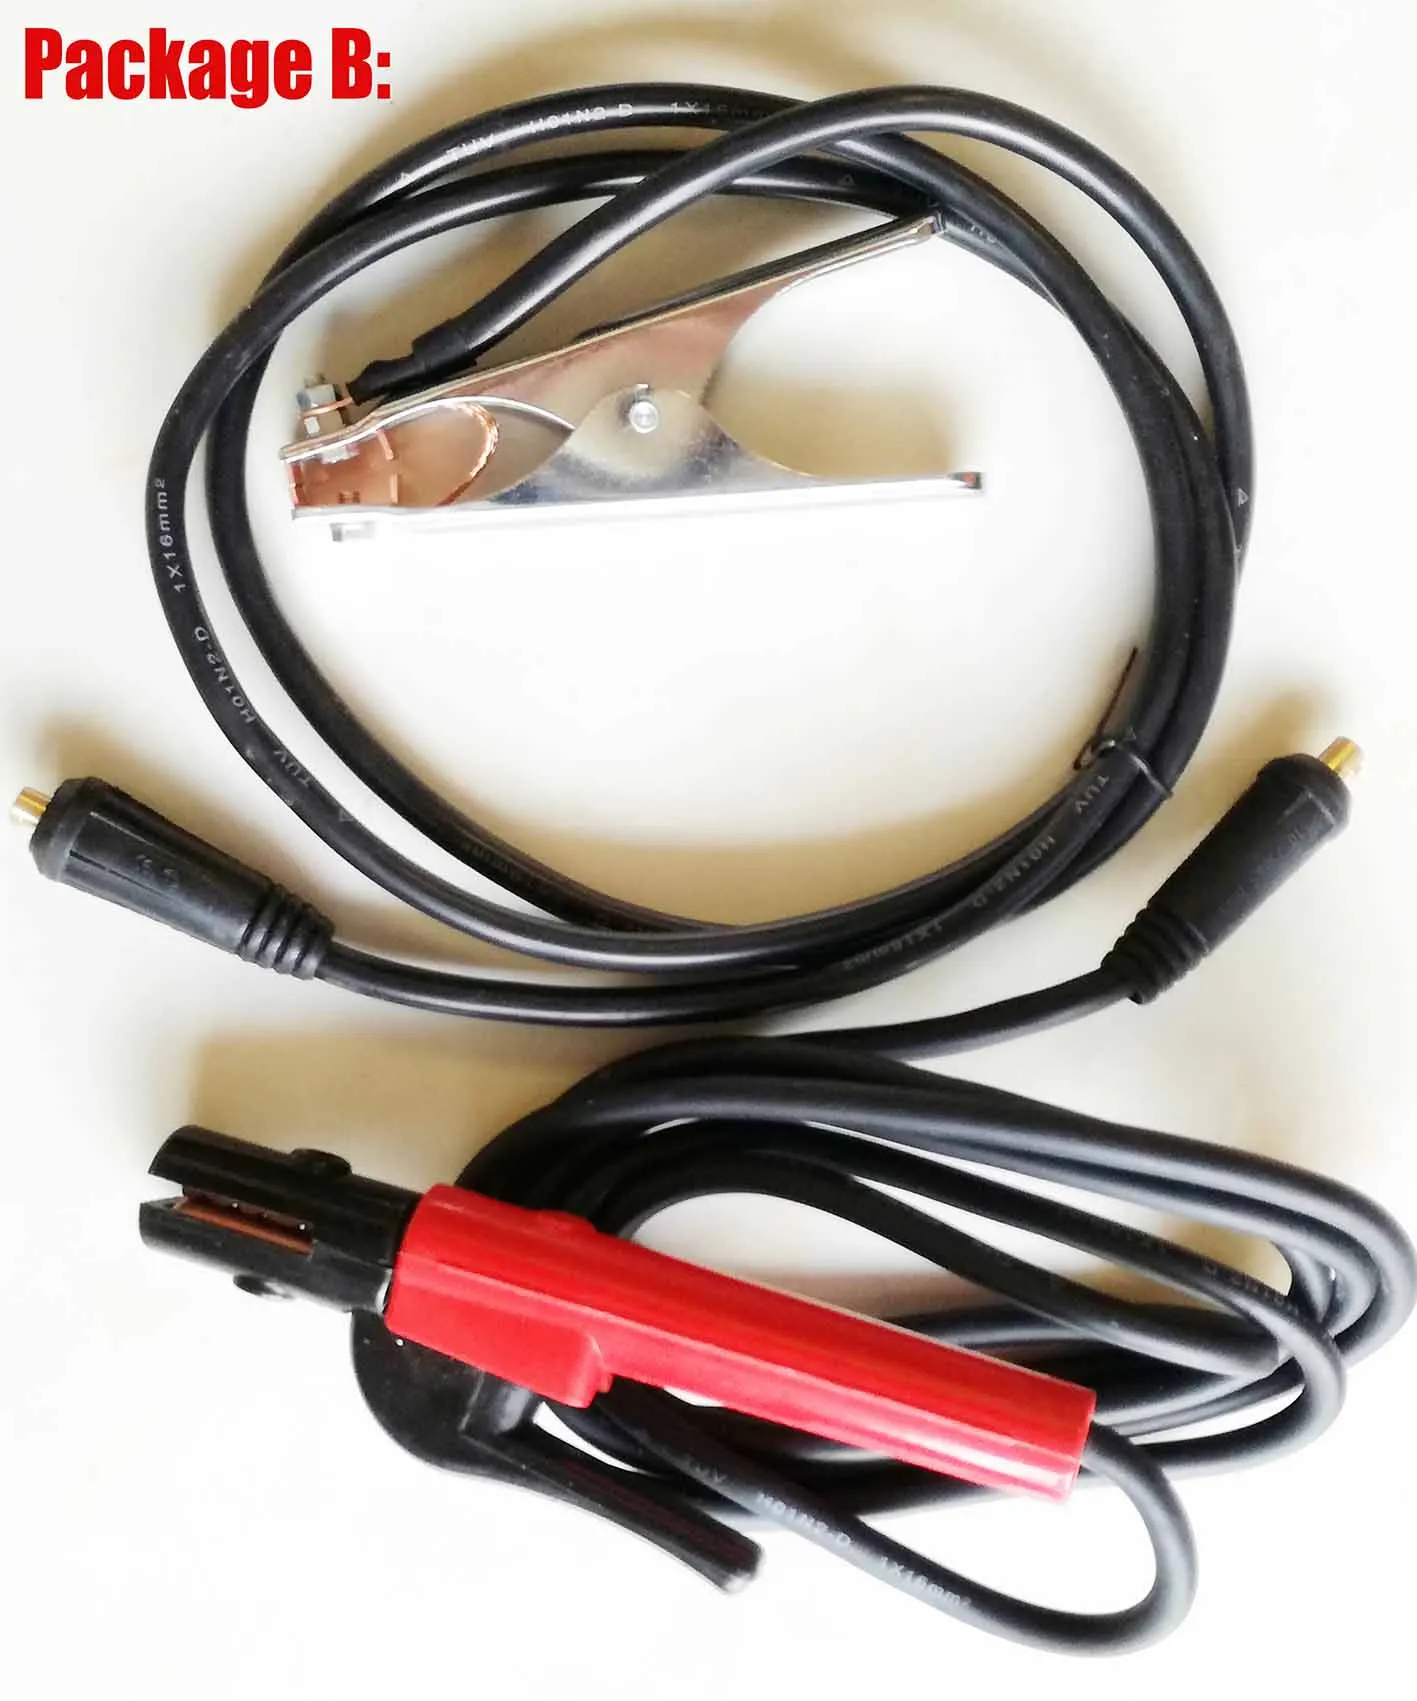 IP21 цифровой дисплей DC инвертор дуговой сварщик 110 V/220 V IGBT MMA сварочный аппарат для домашней сварки и электрической работы - Цвет: B